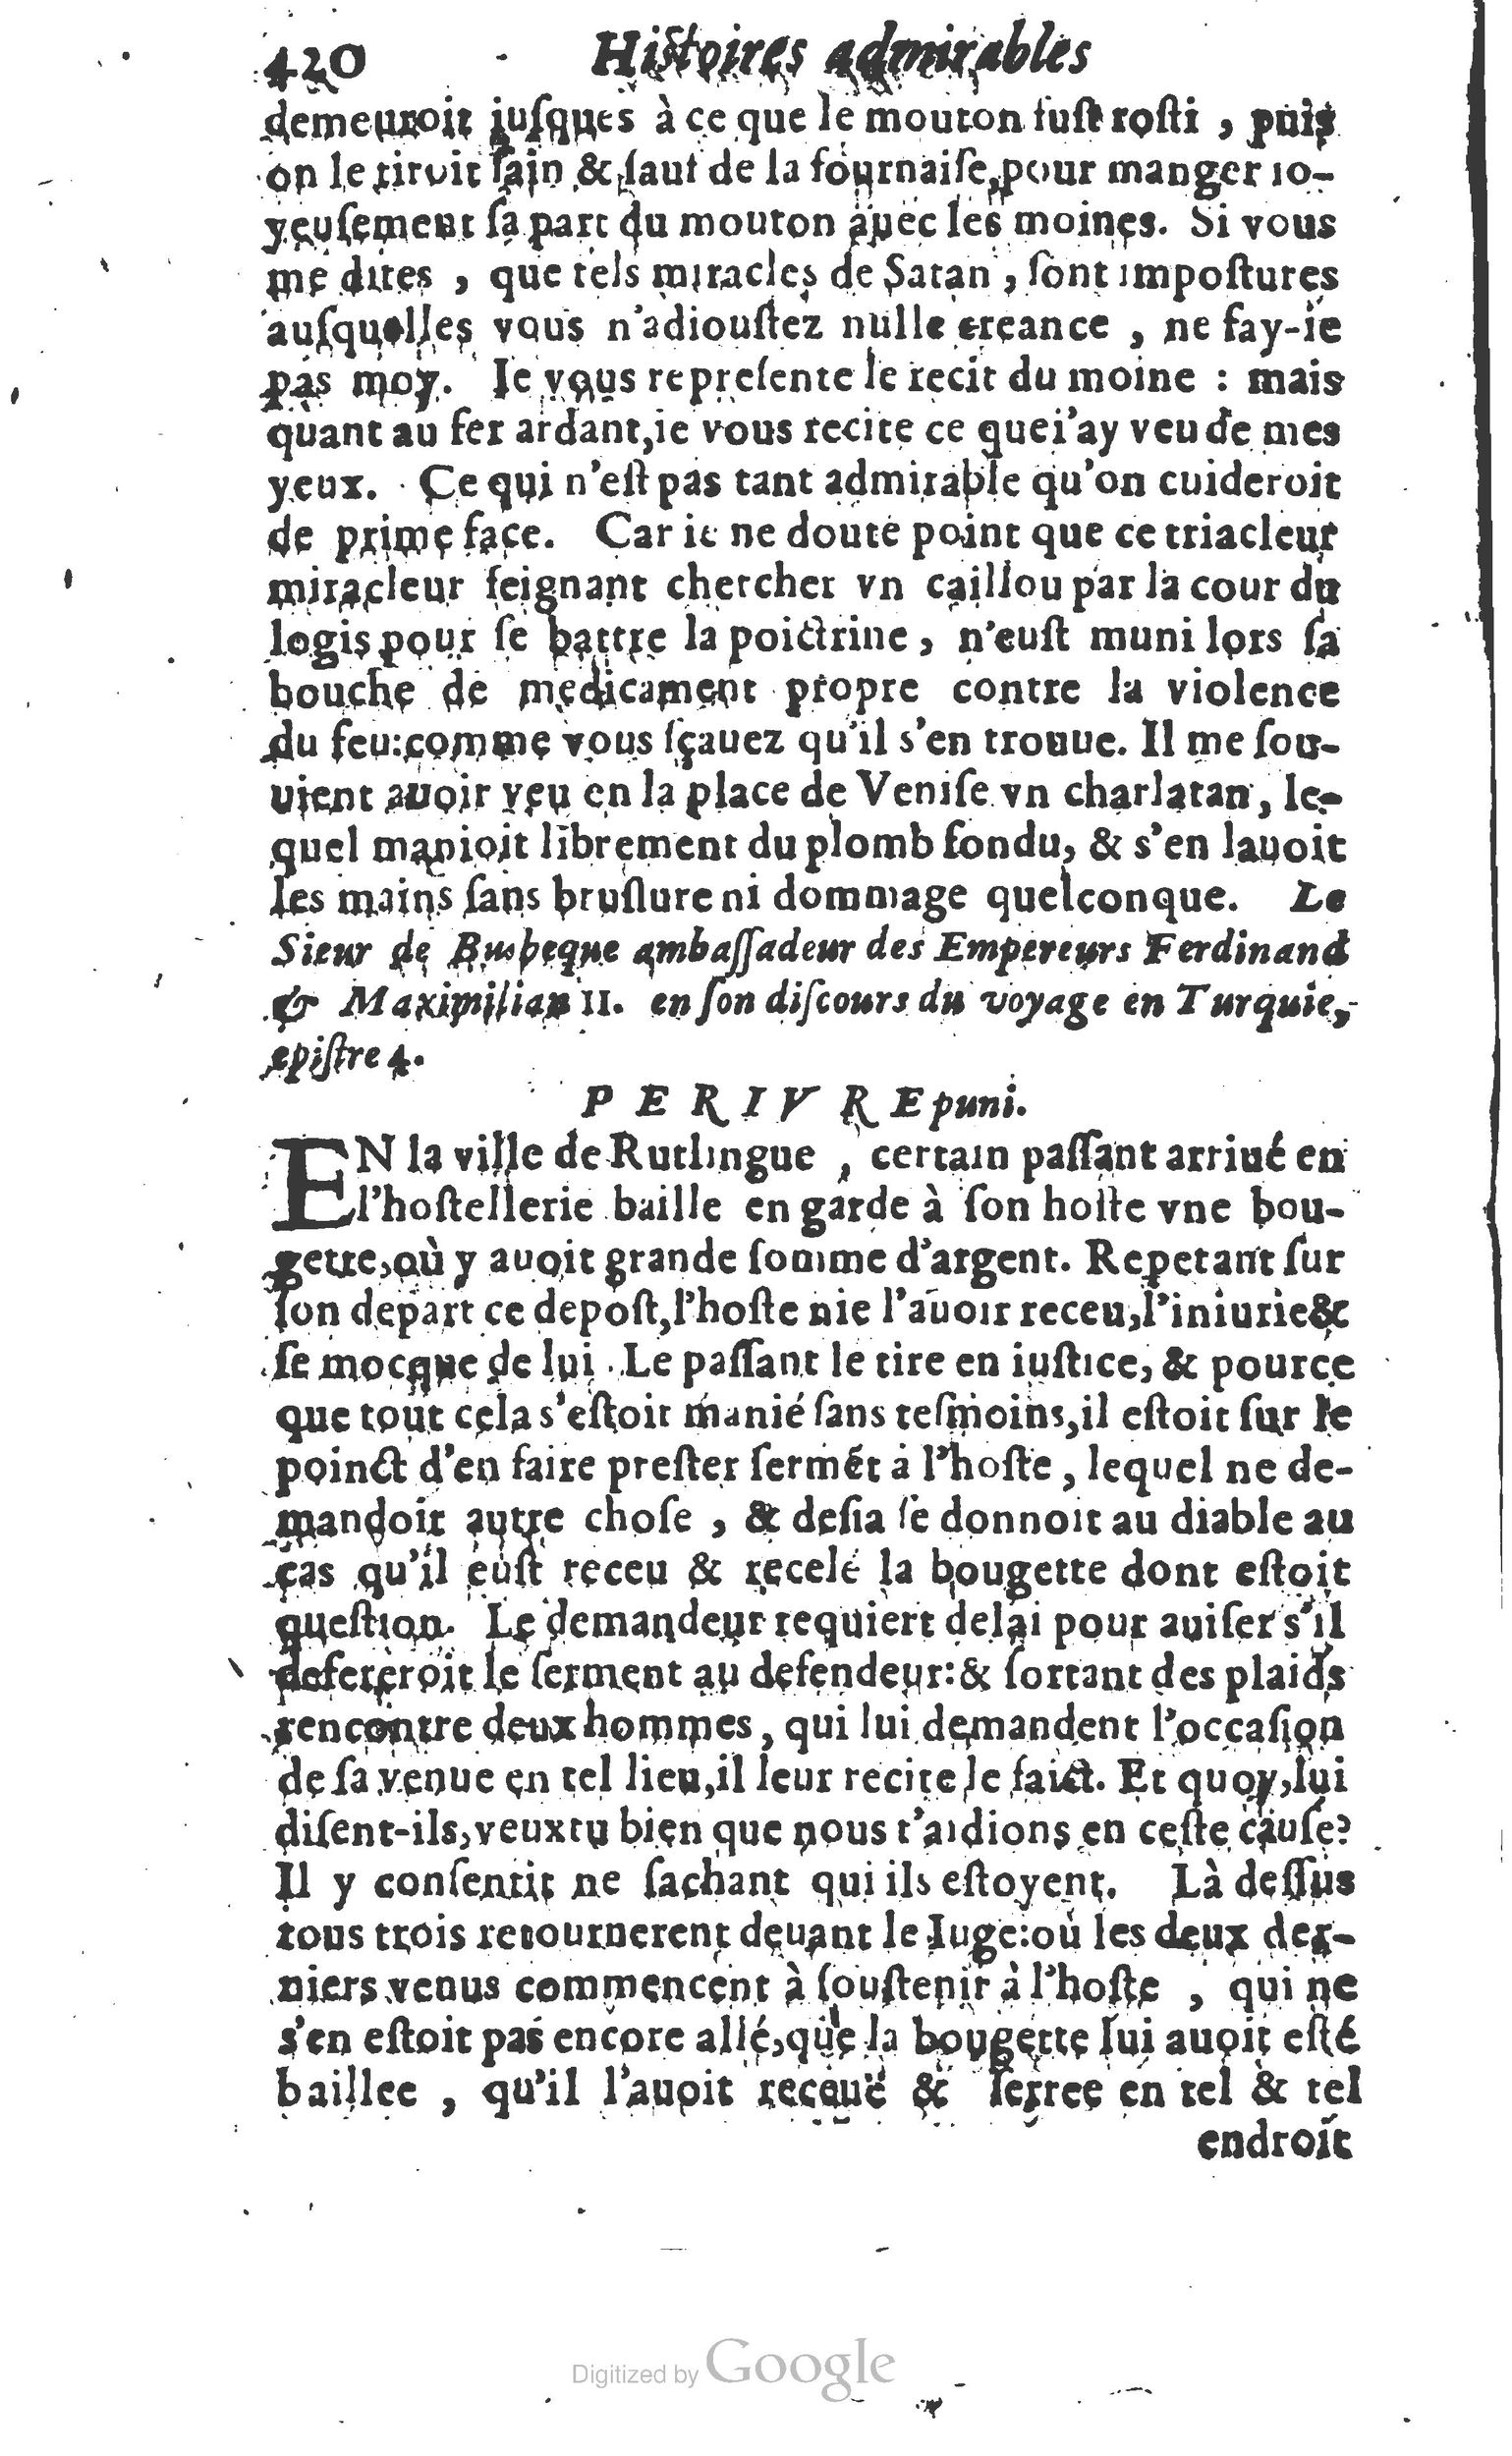 1610 Trésor d’histoires admirables et mémorables de nostre temps Marceau Princeton_Page_0441.jpg